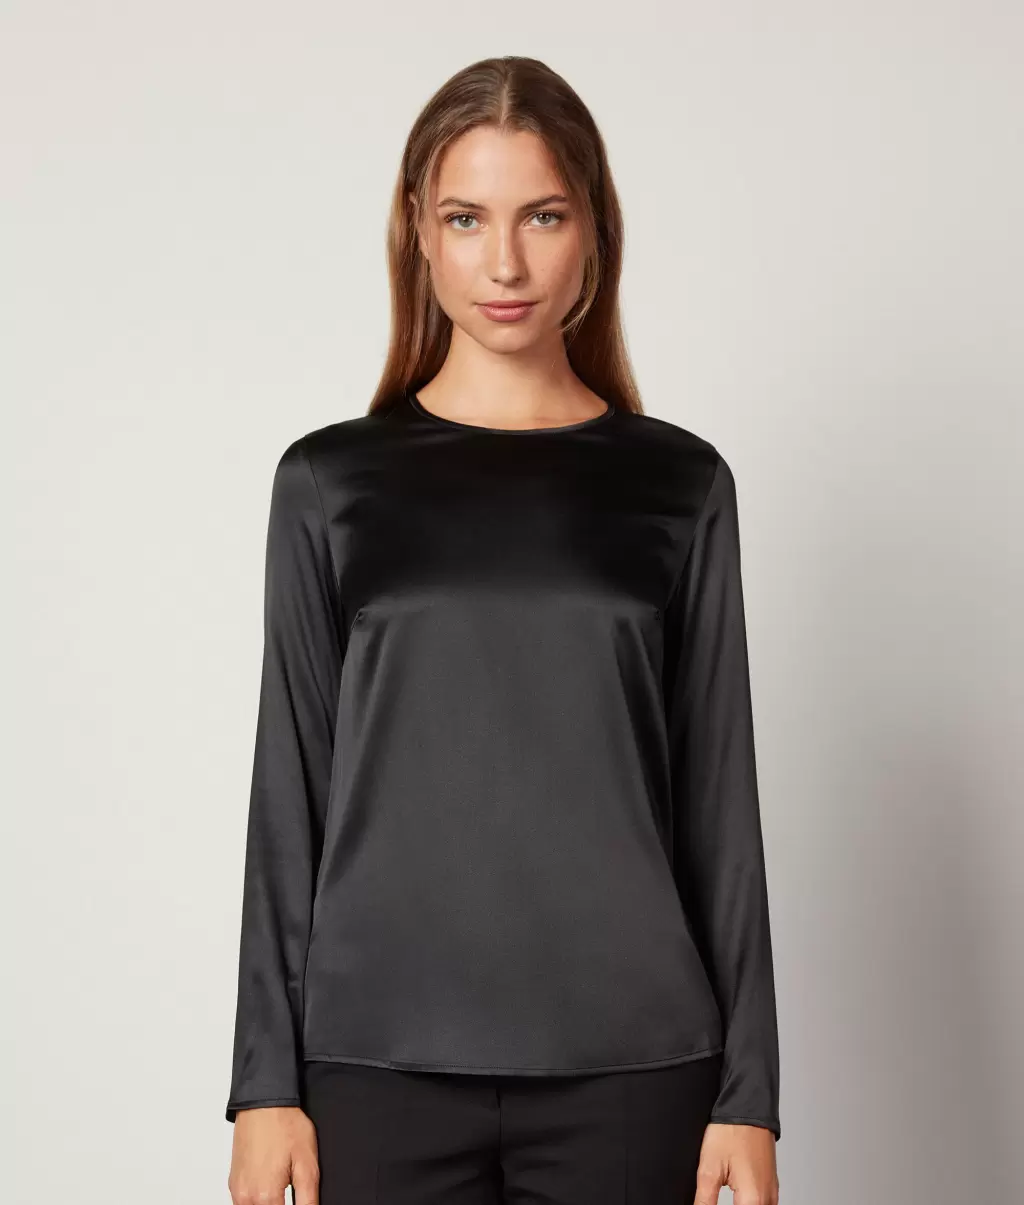 Koszule I Bluzki Kobieta Black Falconeri Bluzka Z Okrągłym Dekoltem Z Satyny Jedwabnej - 1